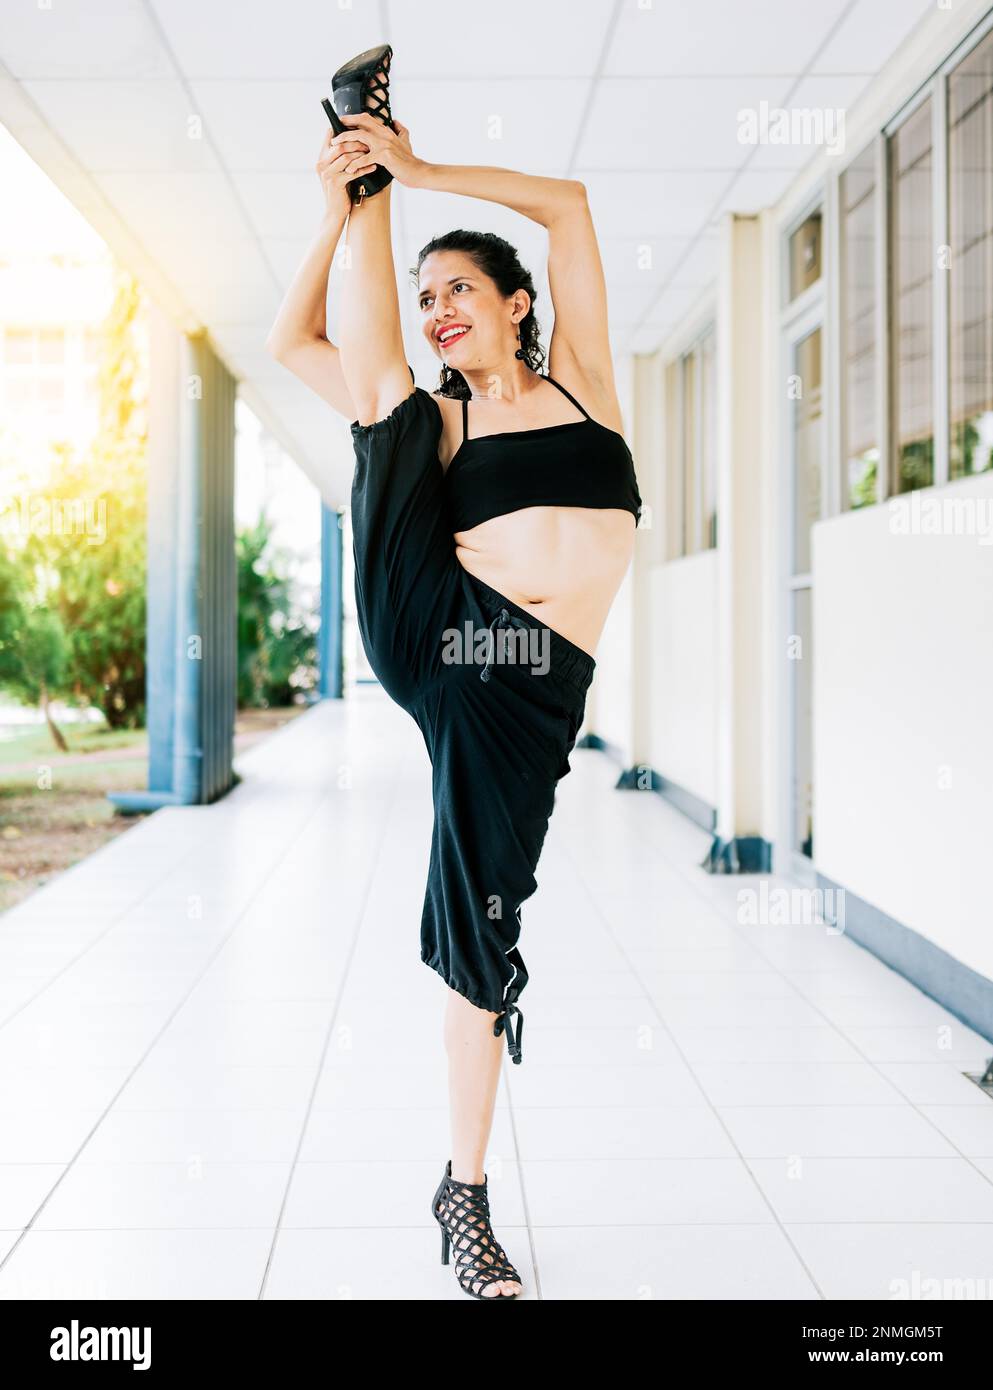 Femme danseuse dans les talons faisant des flexibilités de yoga. Artiste de danse femme faisant acrobaties et flexibilités dans les talons. Concept artistique de gymnastique, danse Banque D'Images